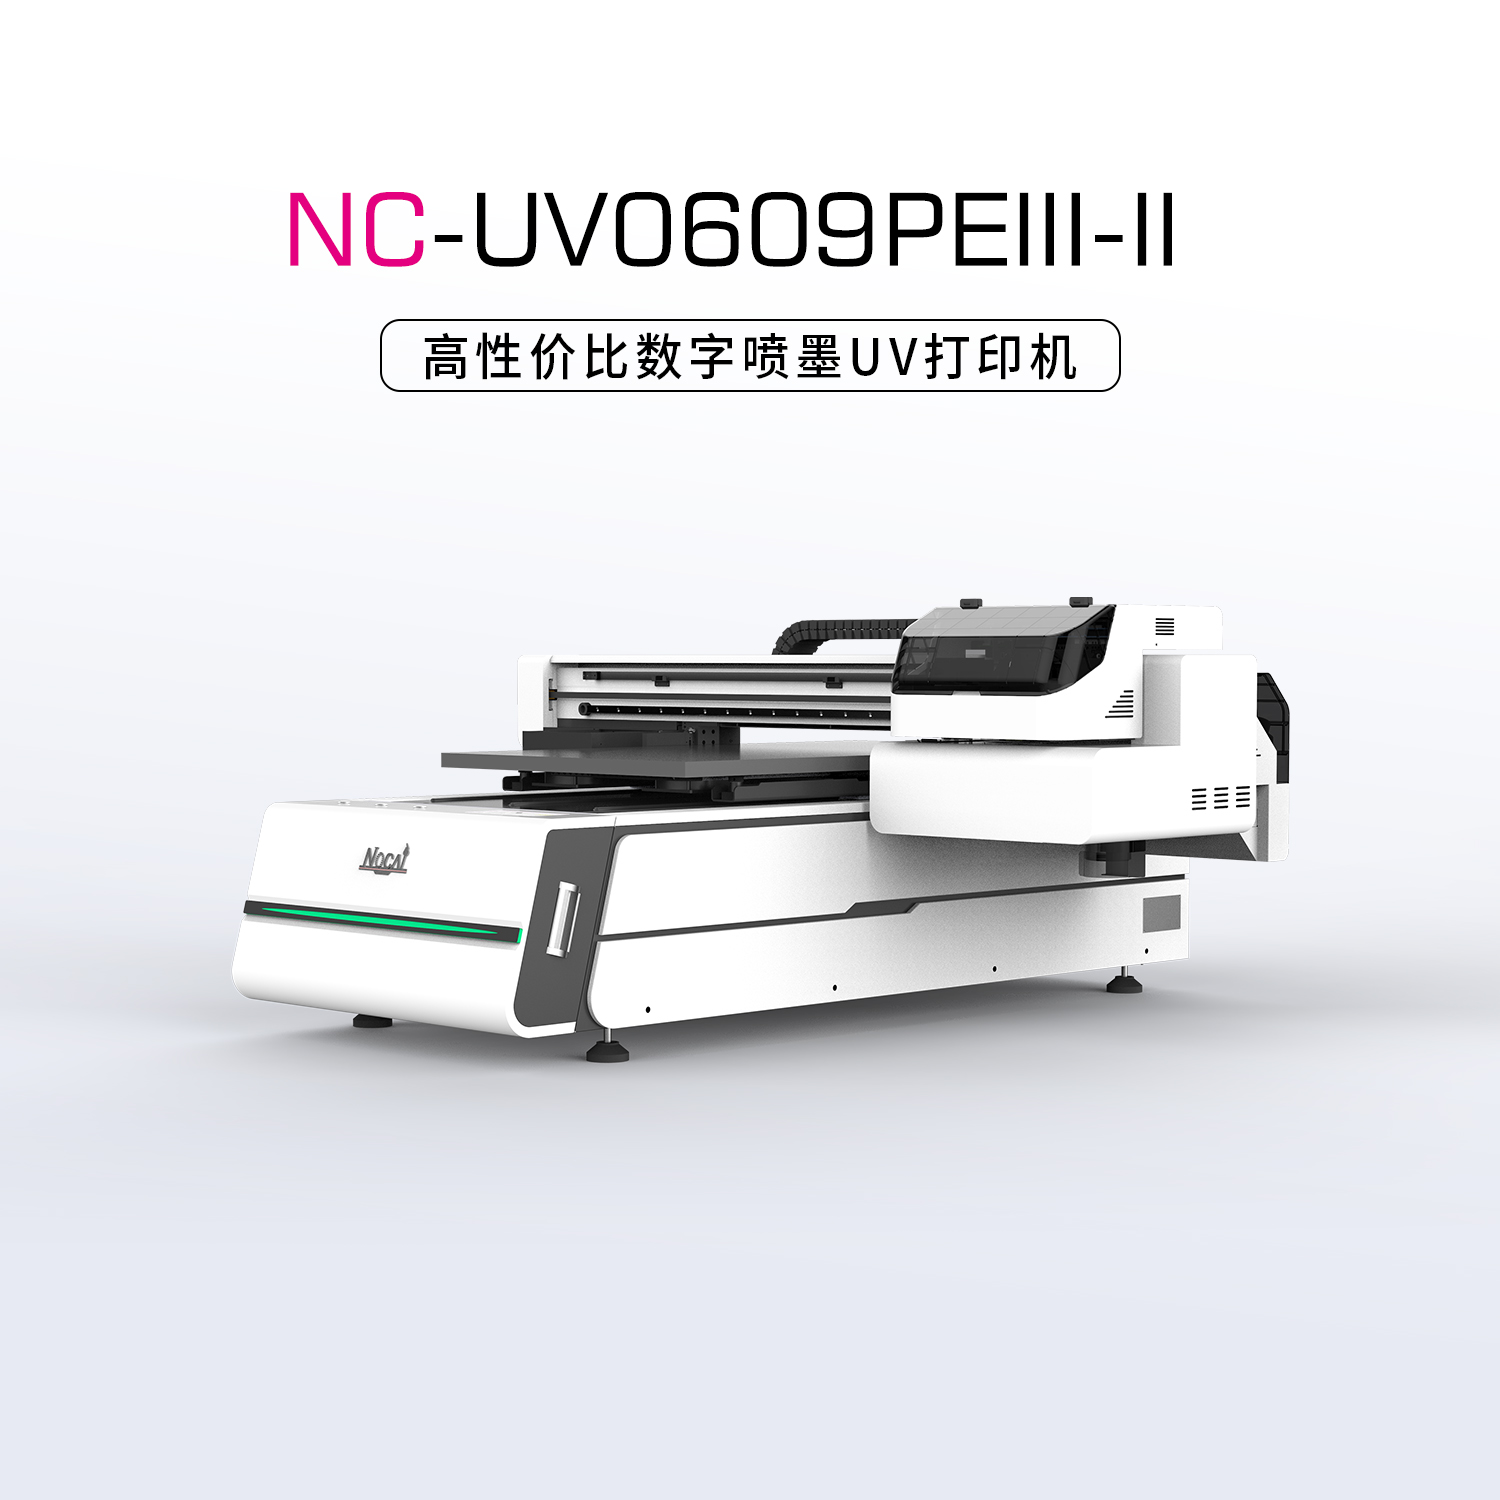 NC-UV0609PEⅢ-Ⅱ小型UV平板打印机